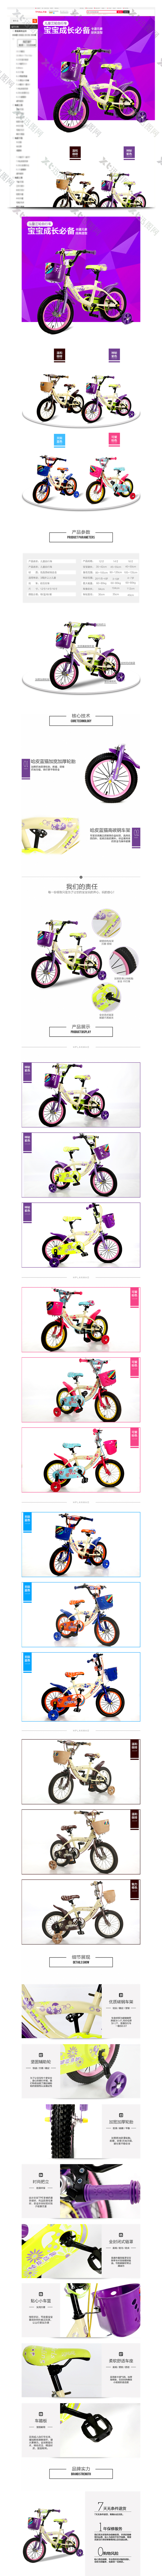 儿童自行车详情页模板